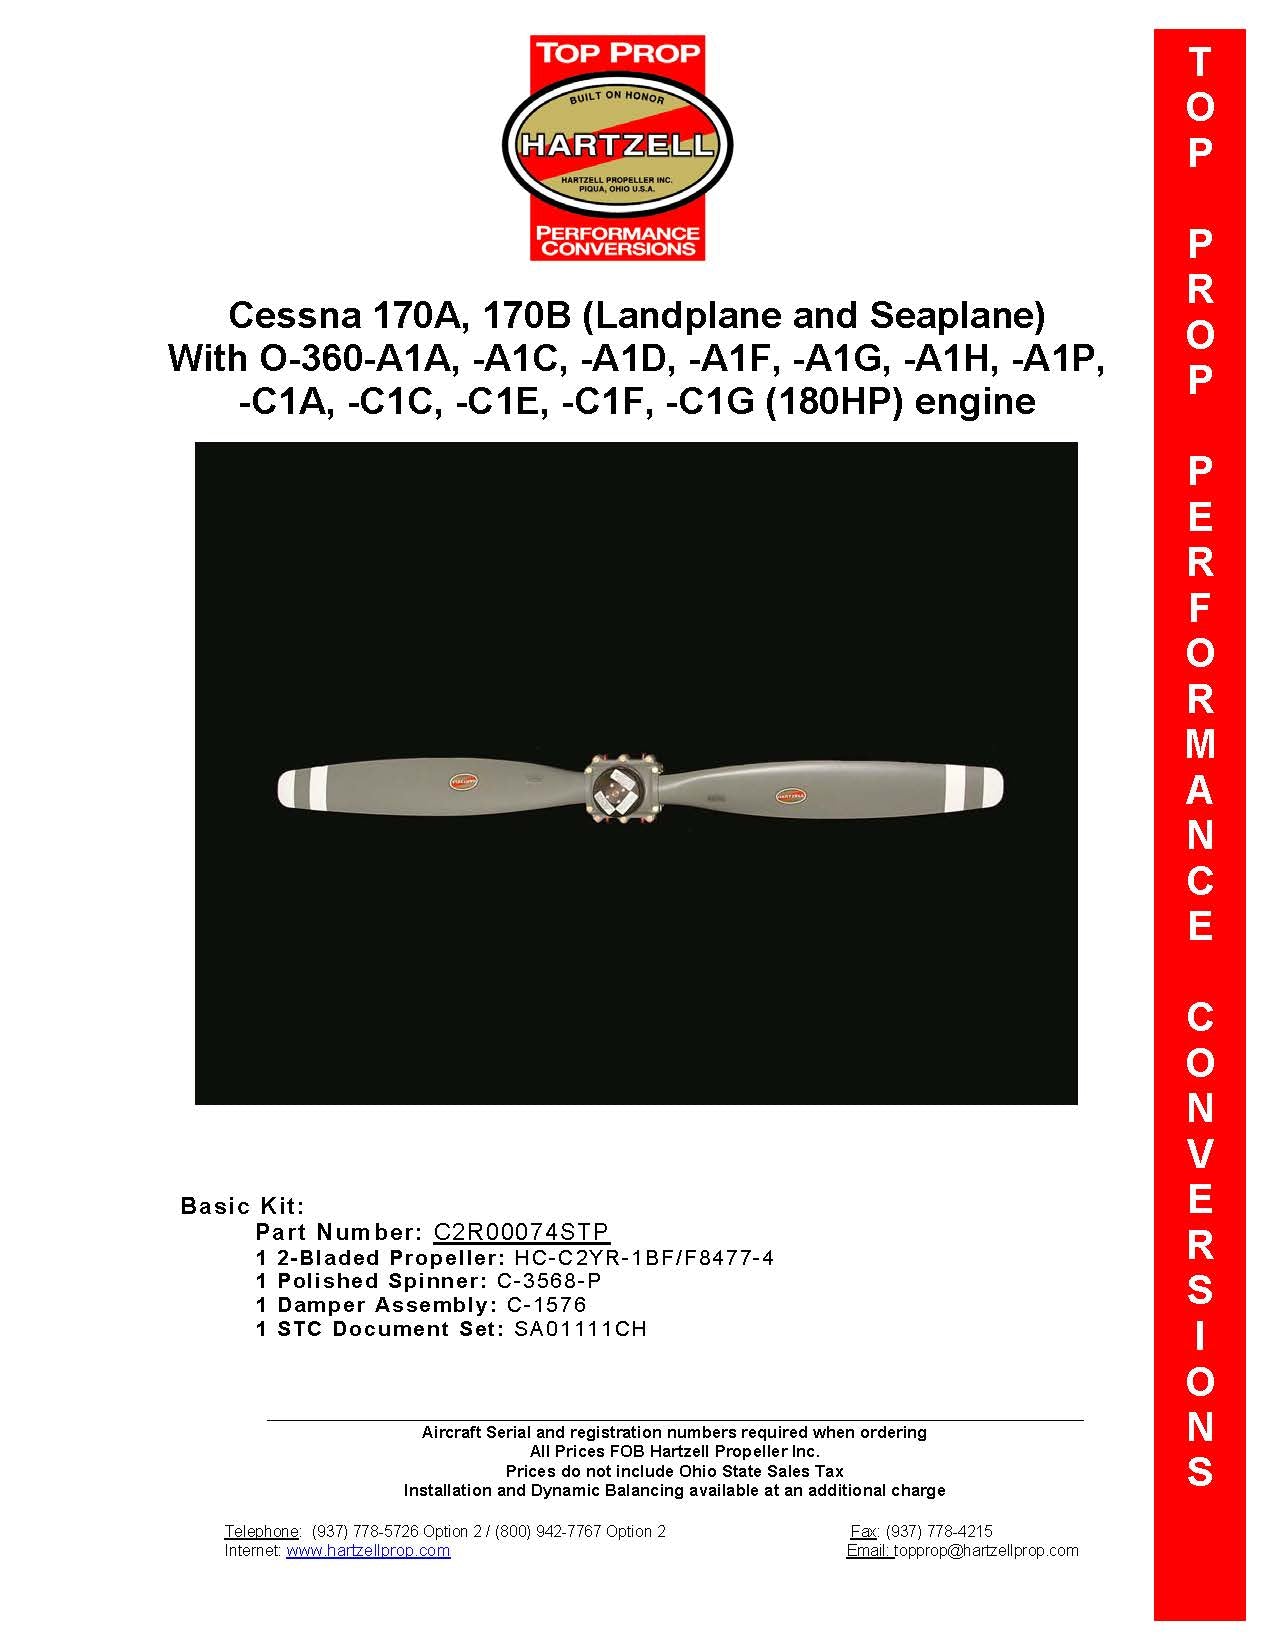 CESSNA-170-C2R00074STP-PAGE-1